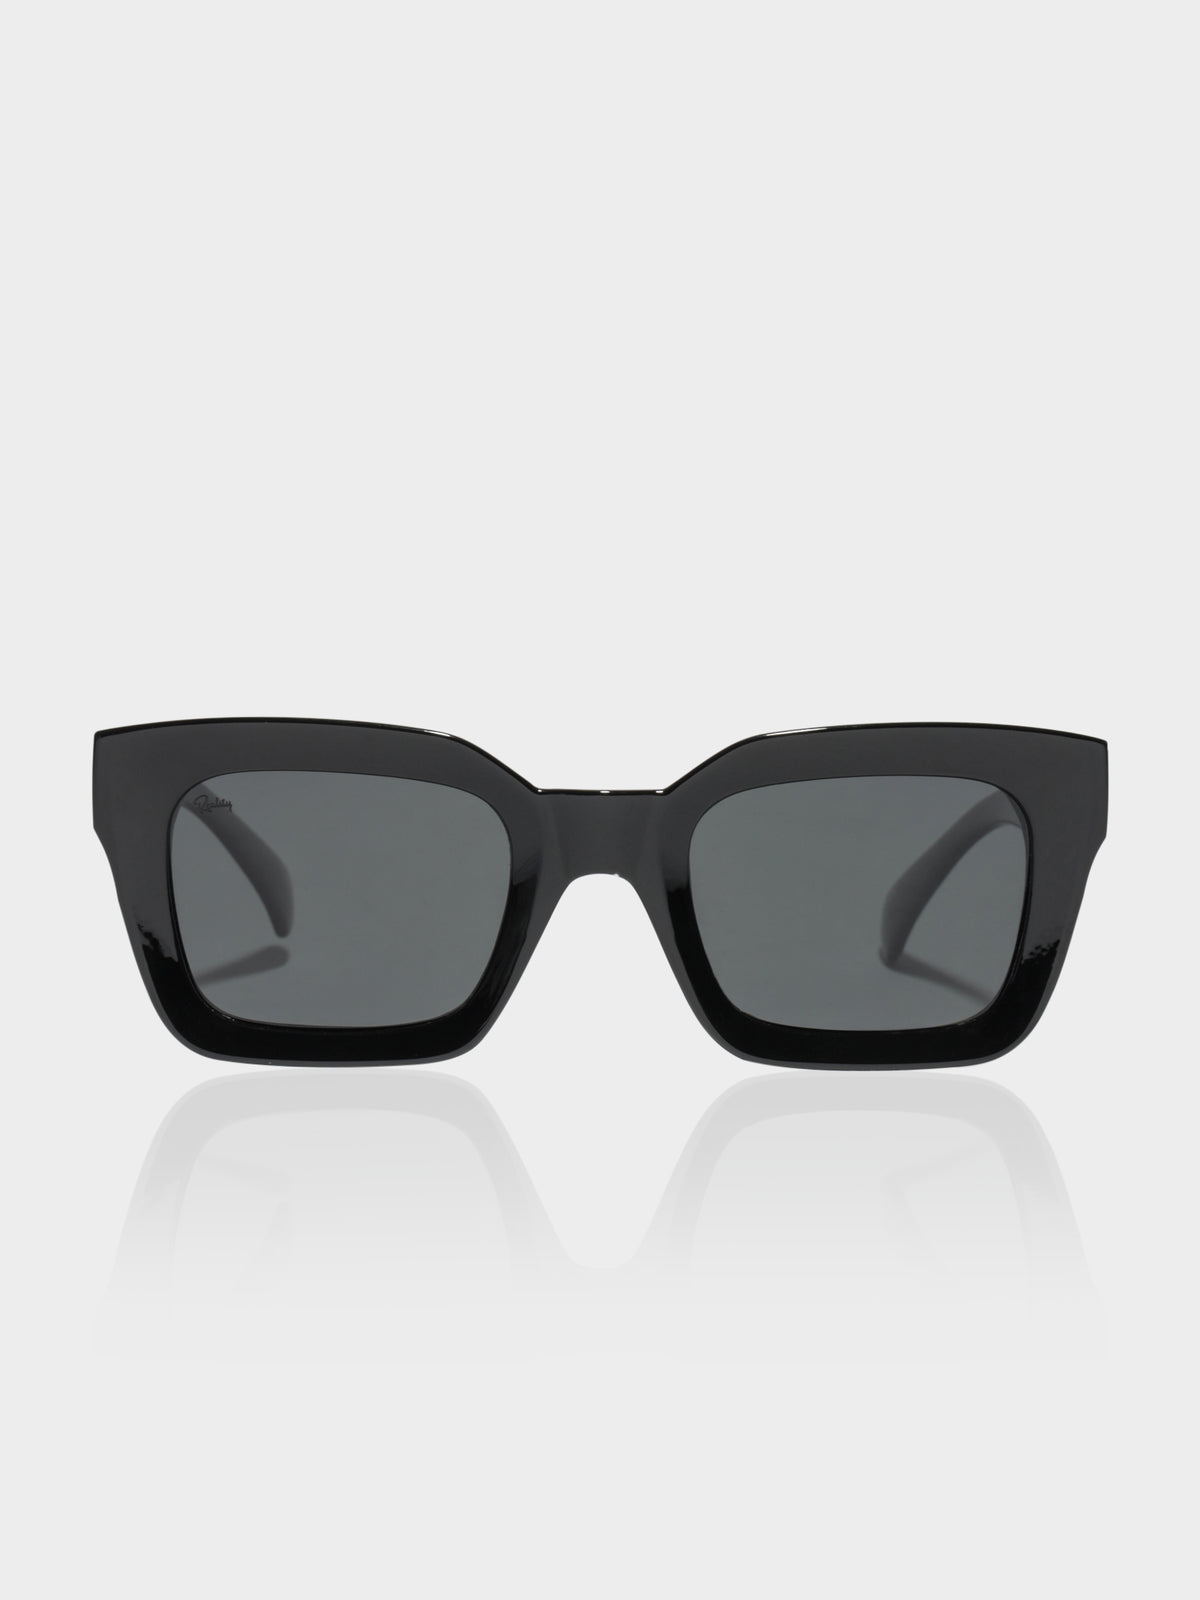 Onassis Square Sunglasses in Black